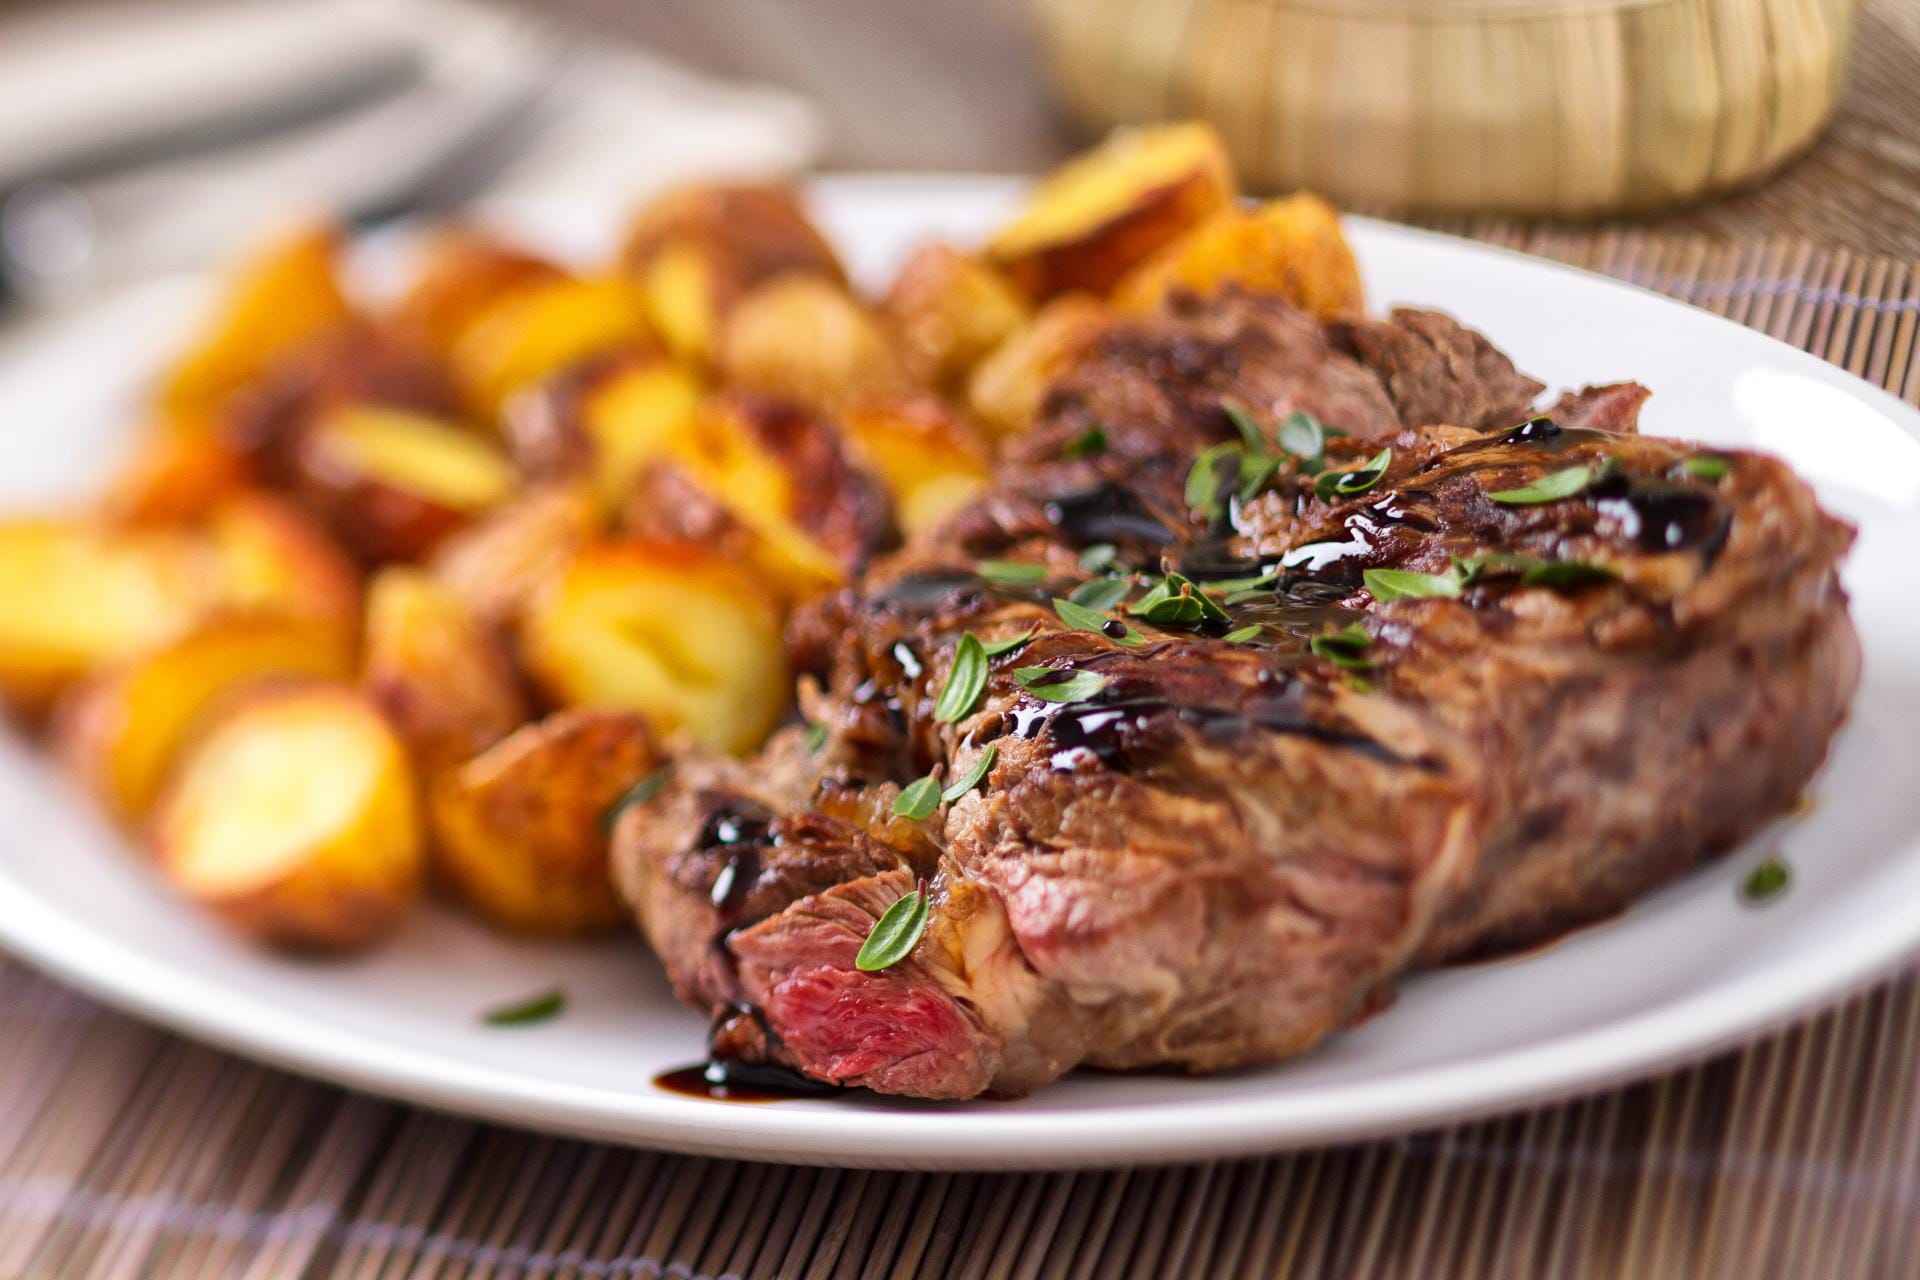 100 Gramm Rindersteak bringt 21,5 Gramm Proteine in den Körper. Zusammen mit fettarm geschmorten Kartoffeln aus dem Ofen ist das die richtige Kombination aus Eiweiß und Kohlenhydraten als Energieträger.